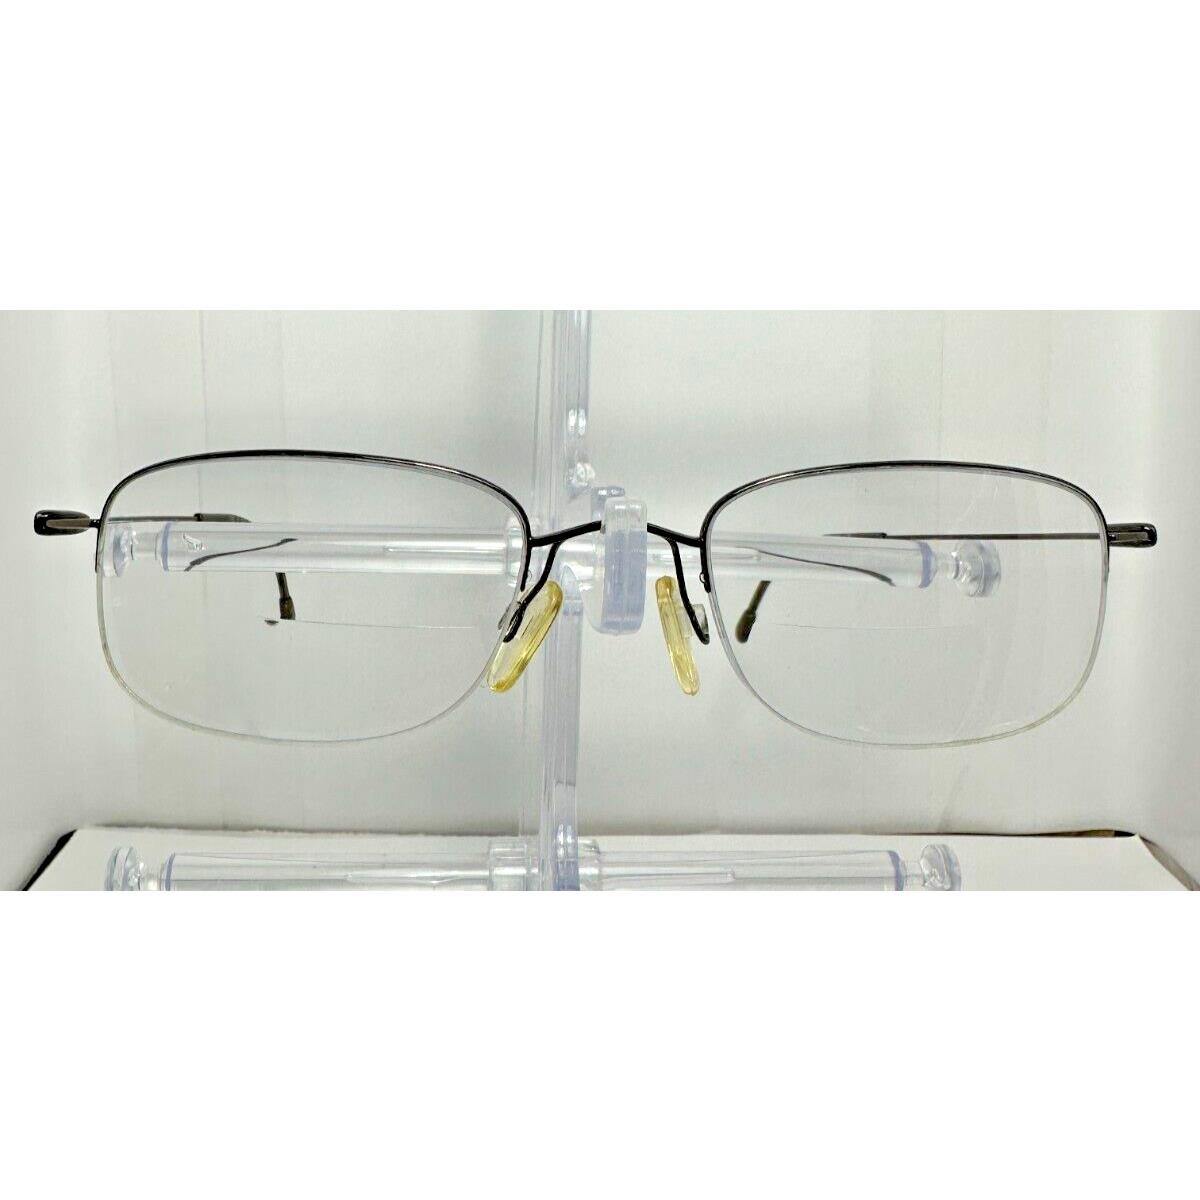 Silhouette Titan 7488 40 6061 Eyeglasses 49-20-135 Brown Metal